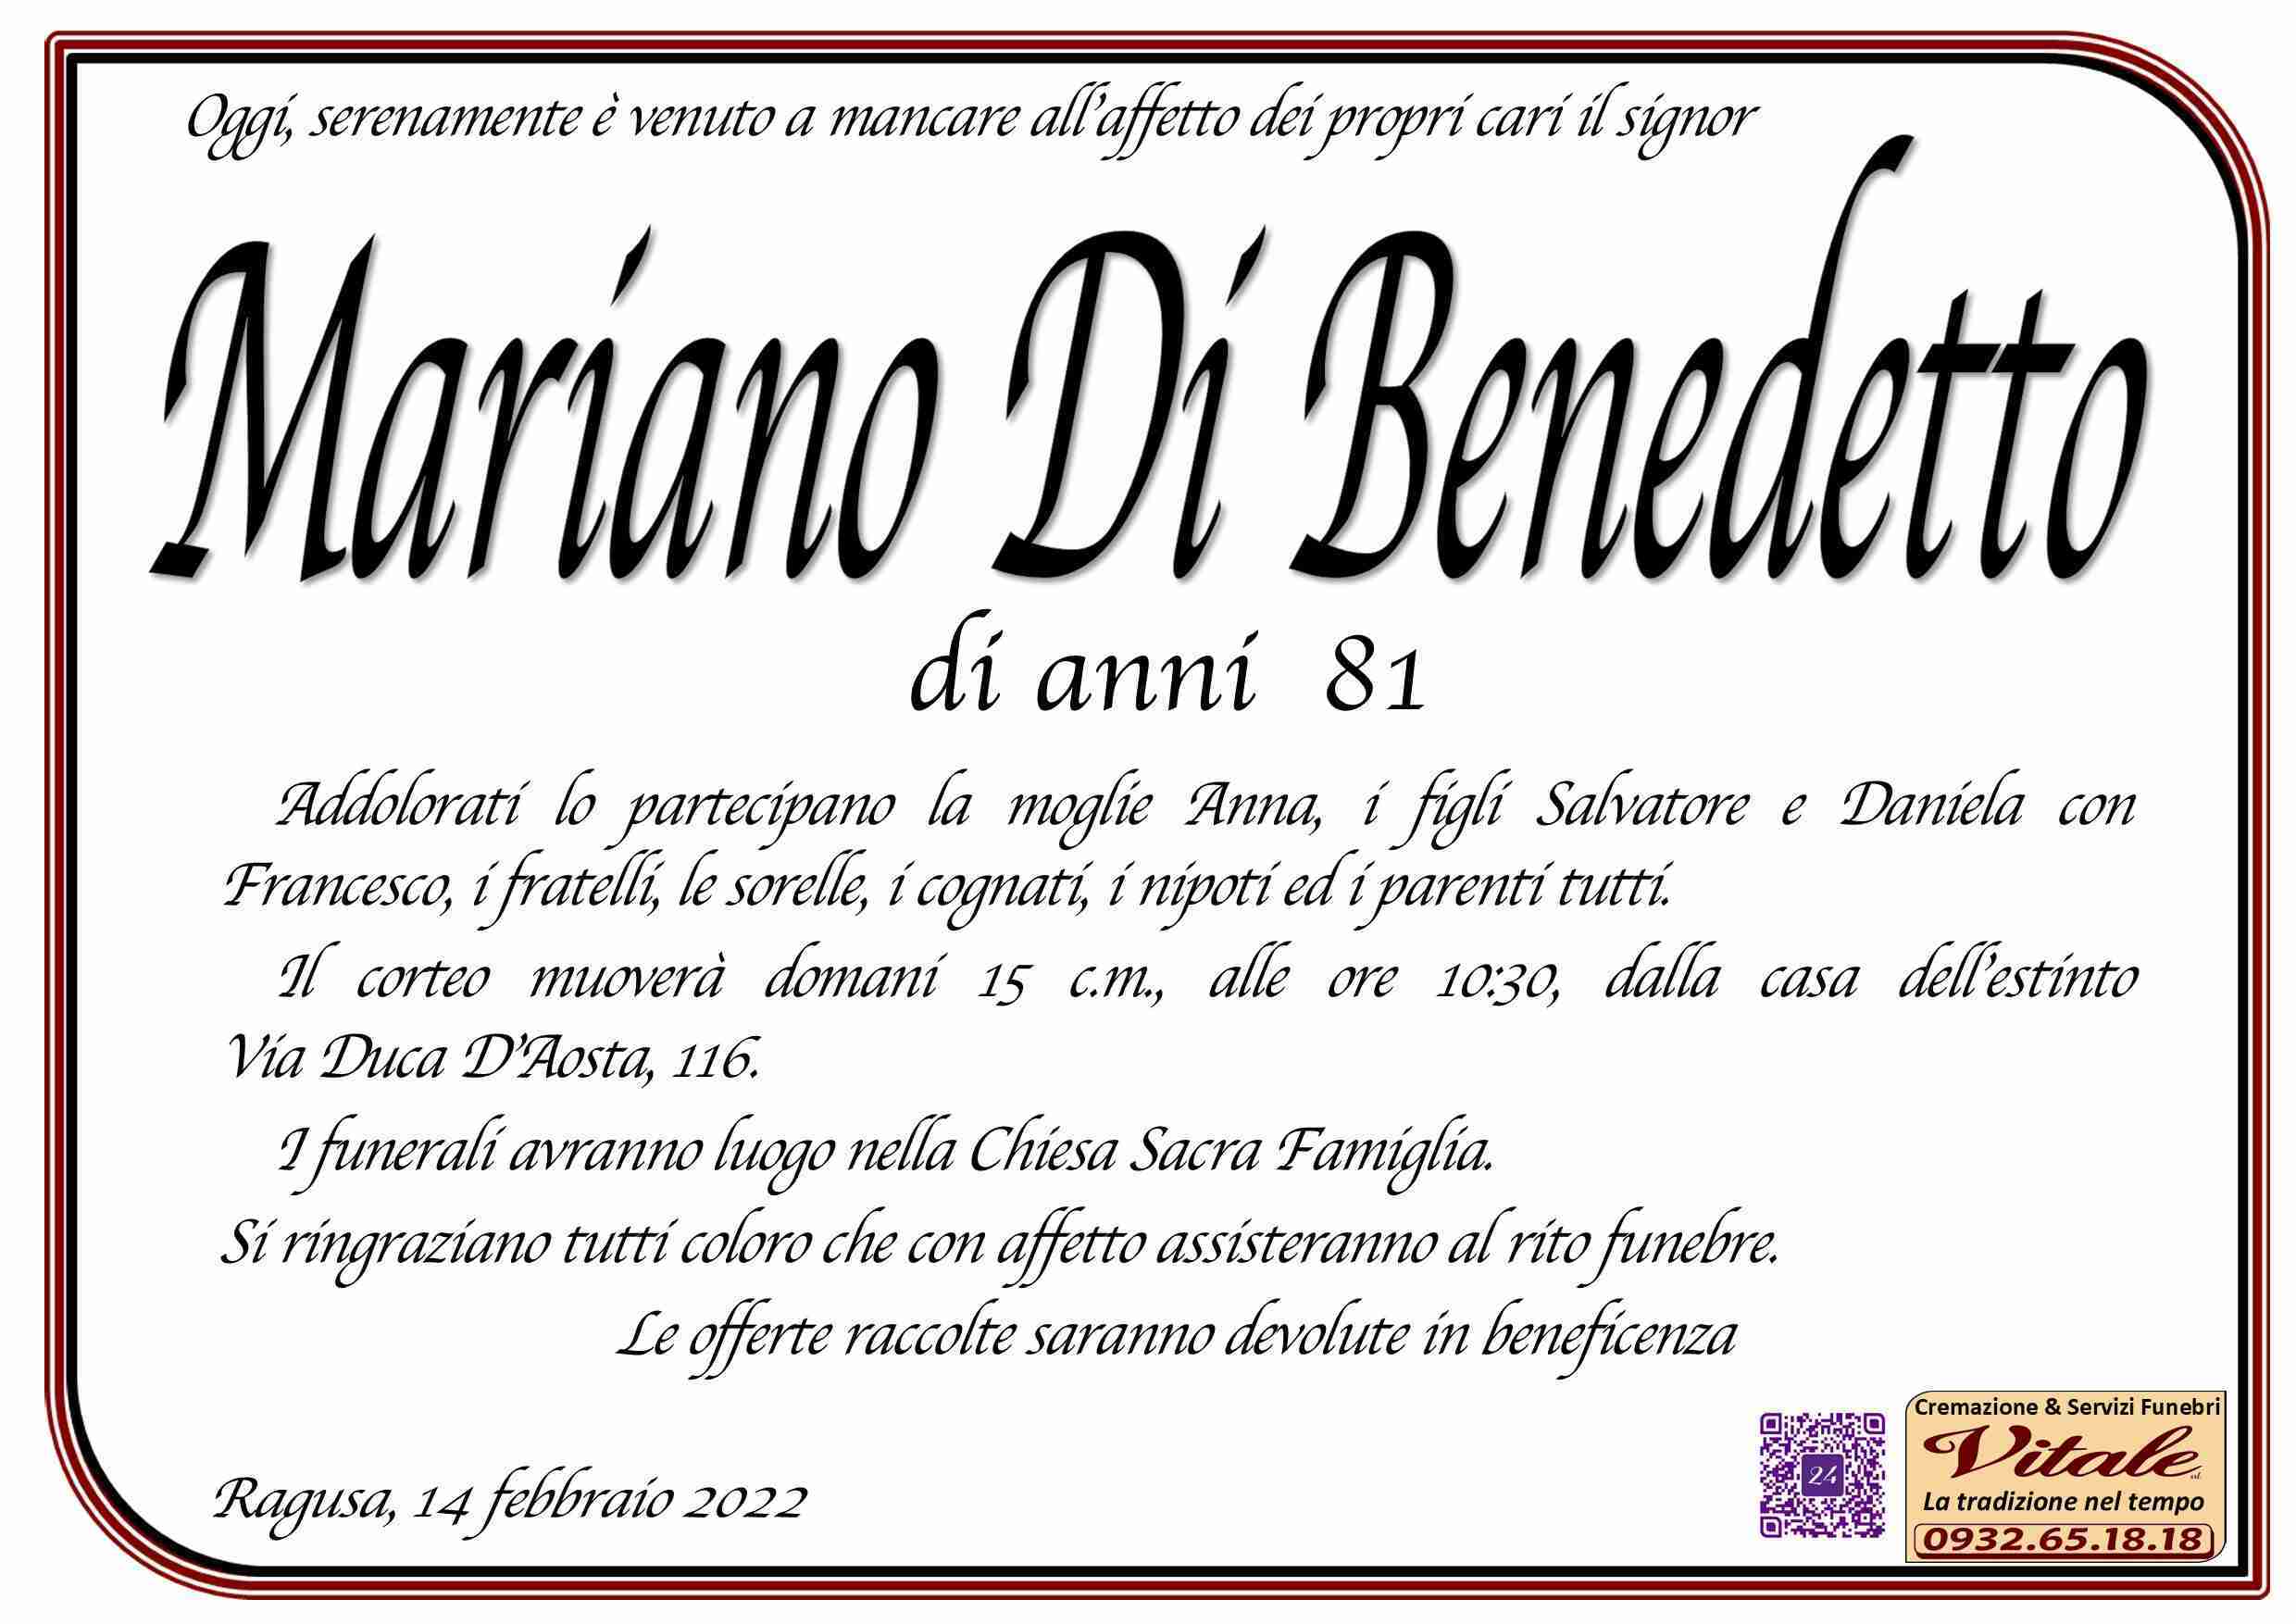 Mariano Di Benedetto